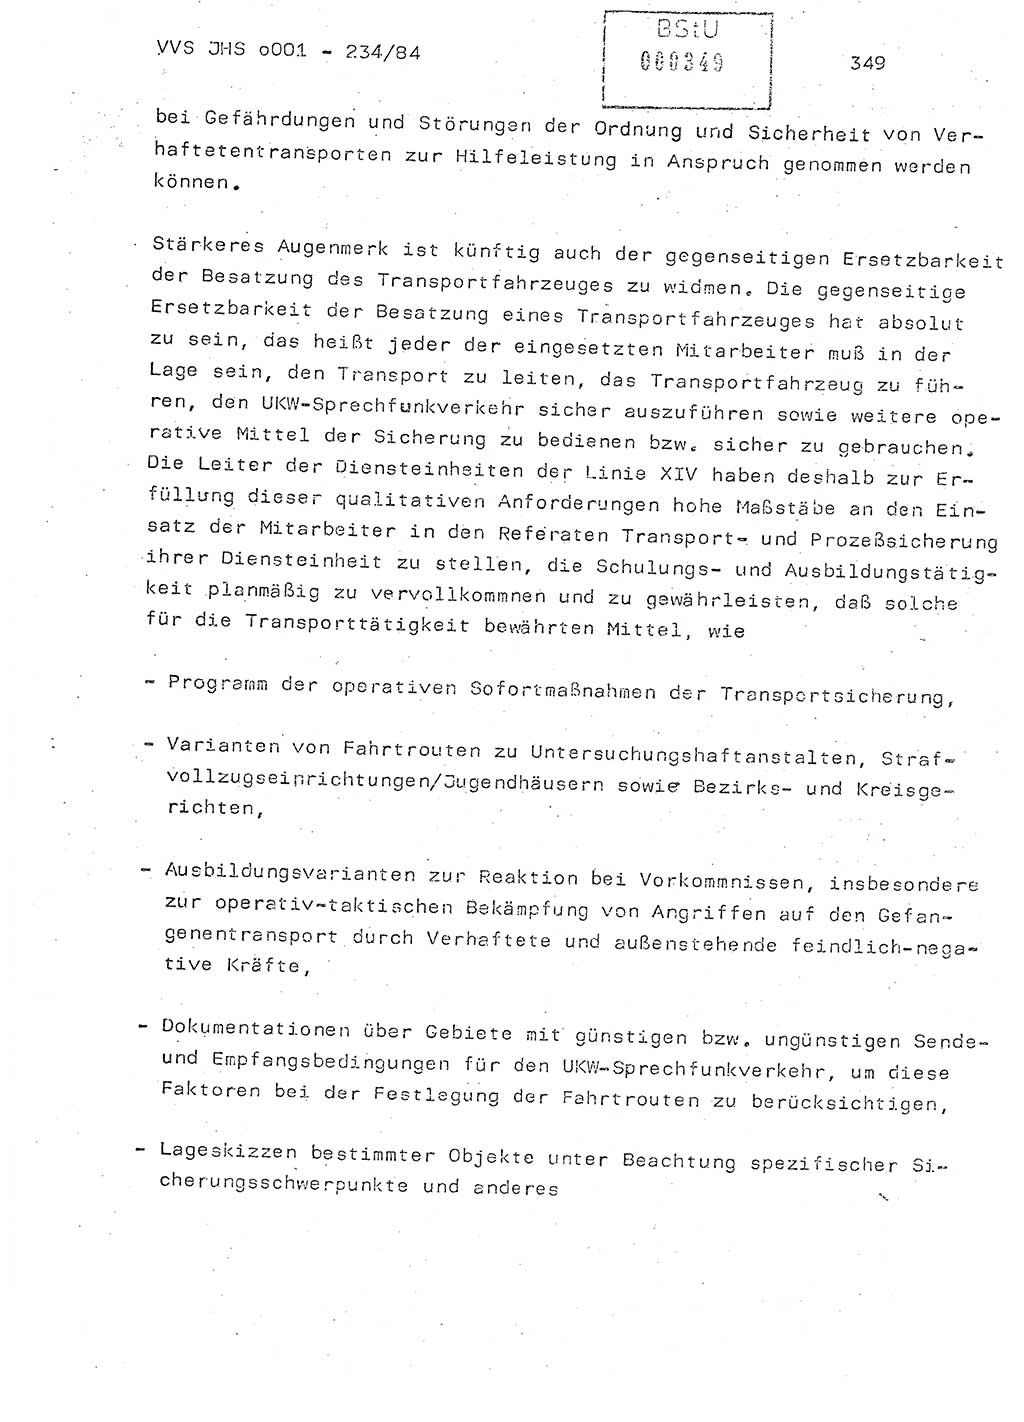 Dissertation Oberst Siegfried Rataizick (Abt. ⅩⅣ), Oberstleutnant Volkmar Heinz (Abt. ⅩⅣ), Oberstleutnant Werner Stein (HA Ⅸ), Hauptmann Heinz Conrad (JHS), Ministerium für Staatssicherheit (MfS) [Deutsche Demokratische Republik (DDR)], Juristische Hochschule (JHS), Vertrauliche Verschlußsache (VVS) o001-234/84, Potsdam 1984, Seite 349 (Diss. MfS DDR JHS VVS o001-234/84 1984, S. 349)